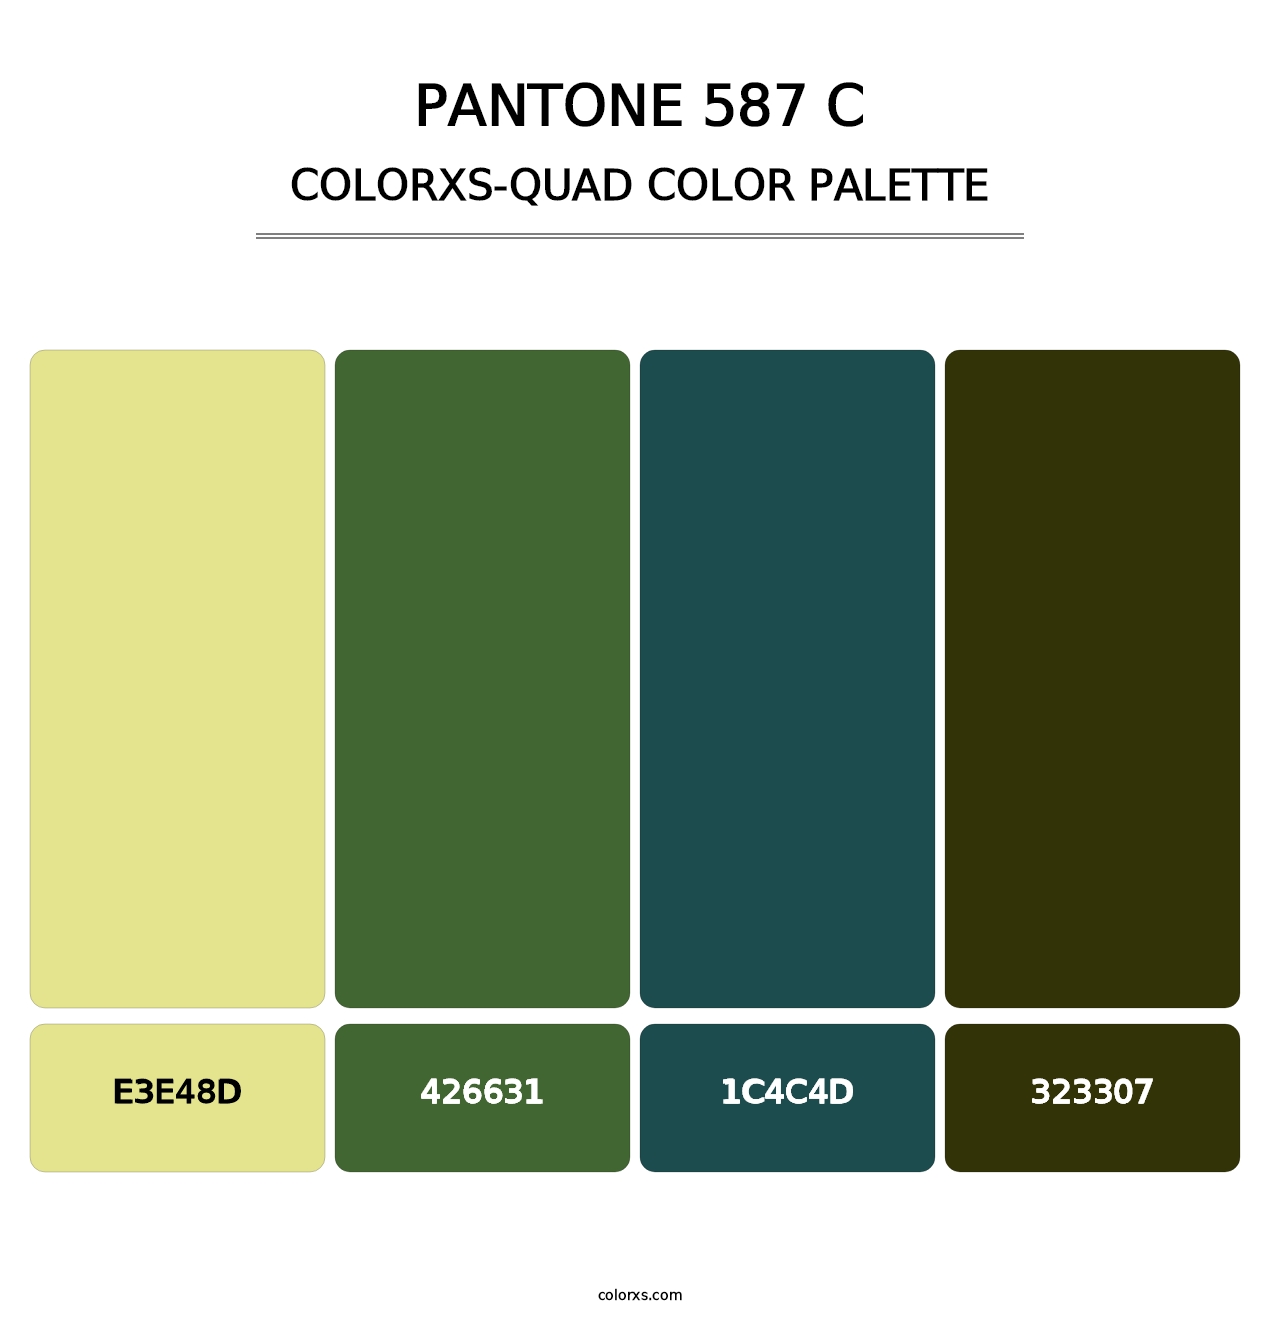 PANTONE 587 C - Colorxs Quad Palette